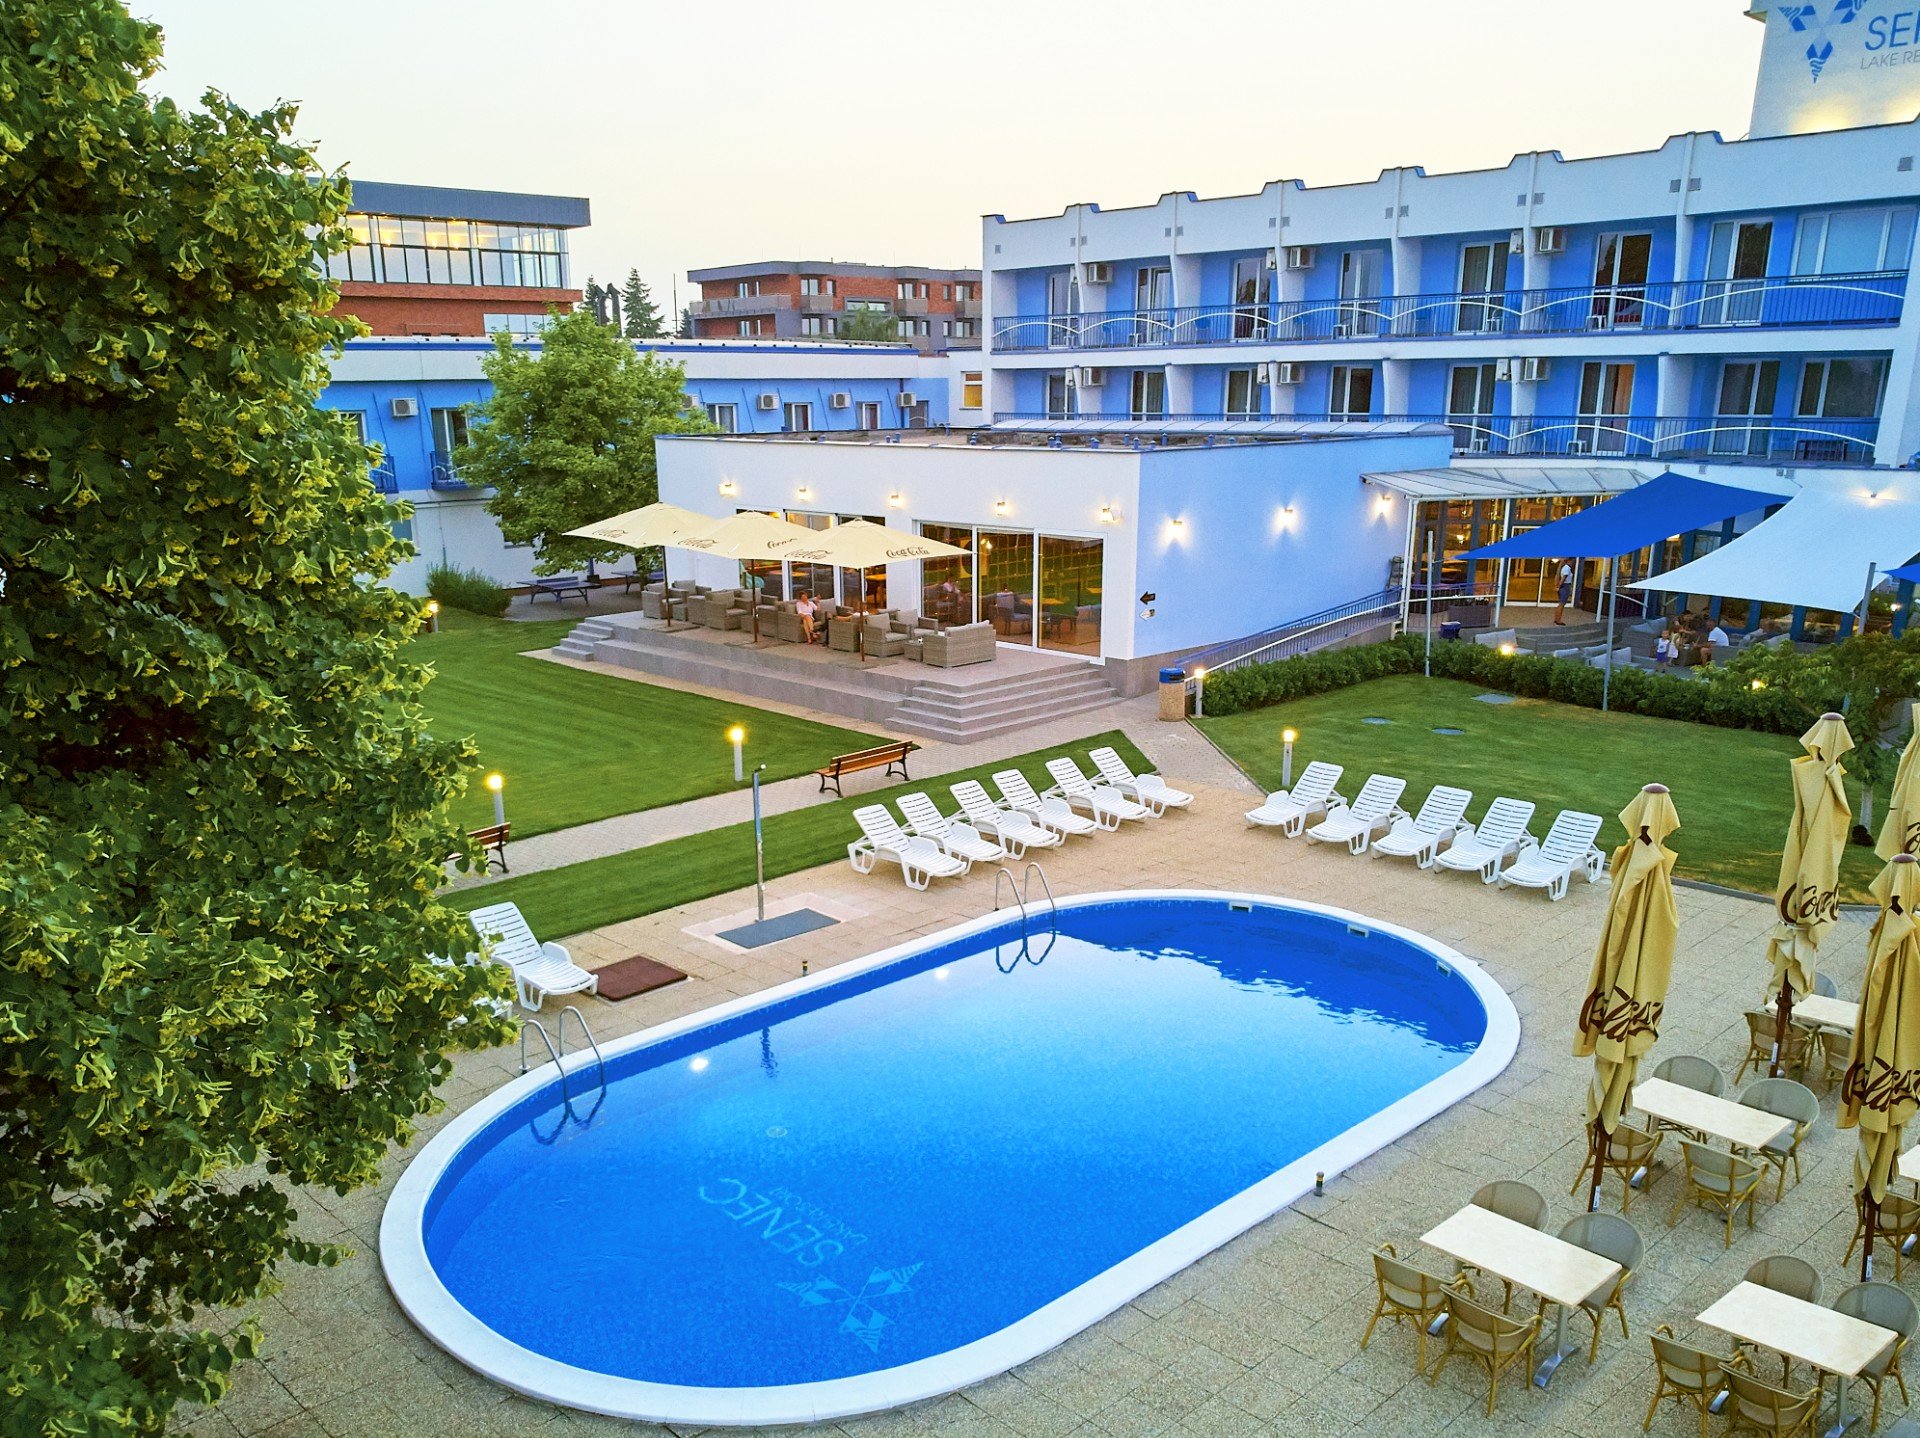 Areál hotela Senec s vonkajším bazénom a lehátkami